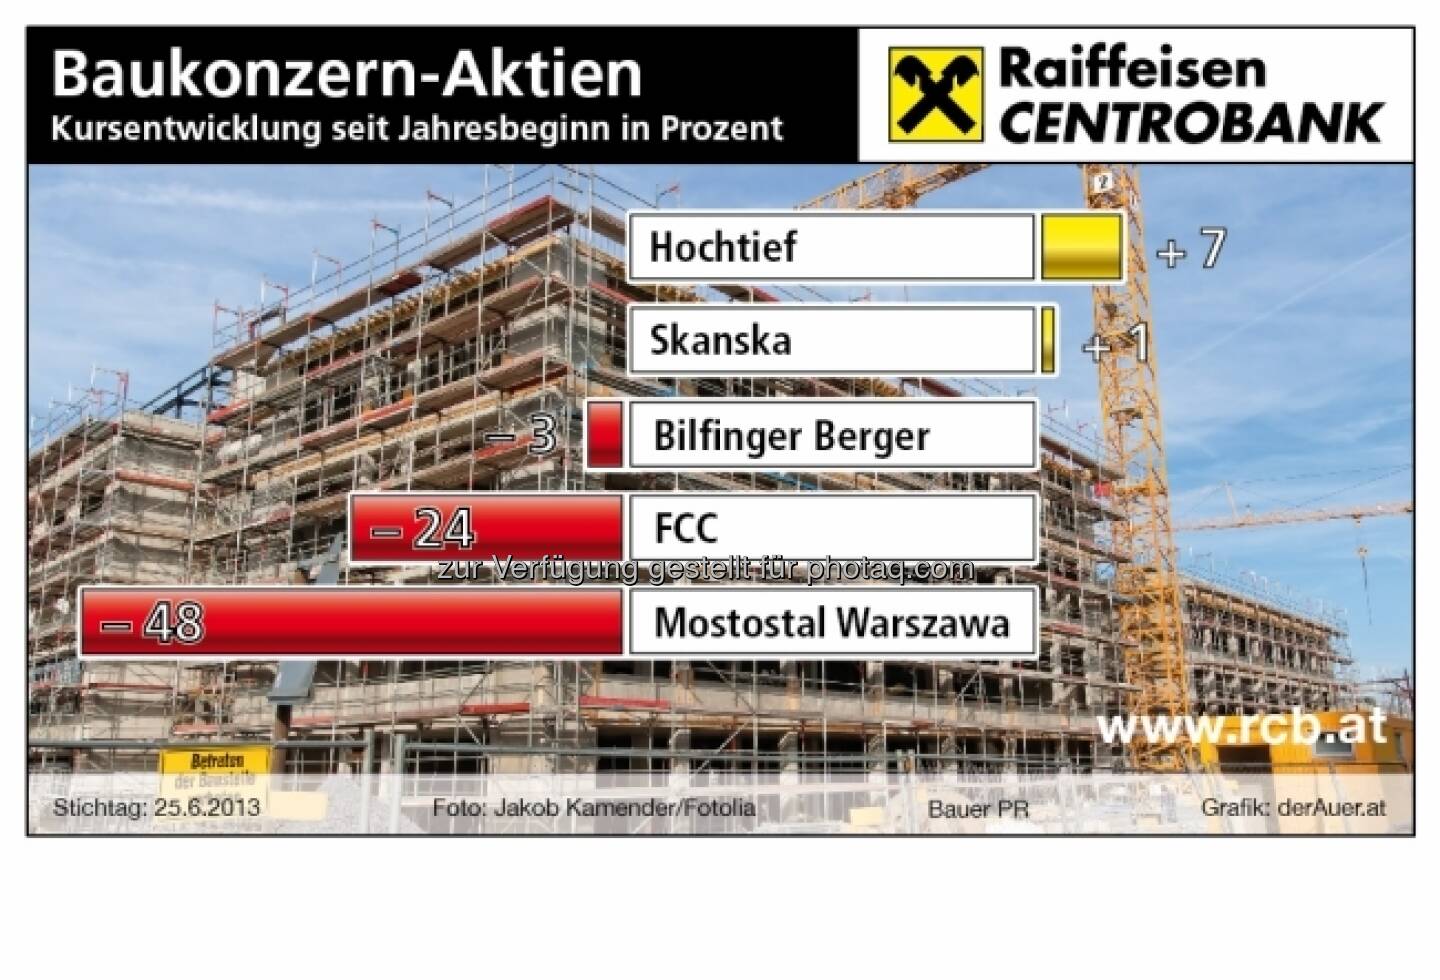 Baukonzern-Aktien Hochtief, Skanska, Bilfinger Berger, FCC, Mostowal - Performance year-to-date (c) derAuer Grafik Buch Web